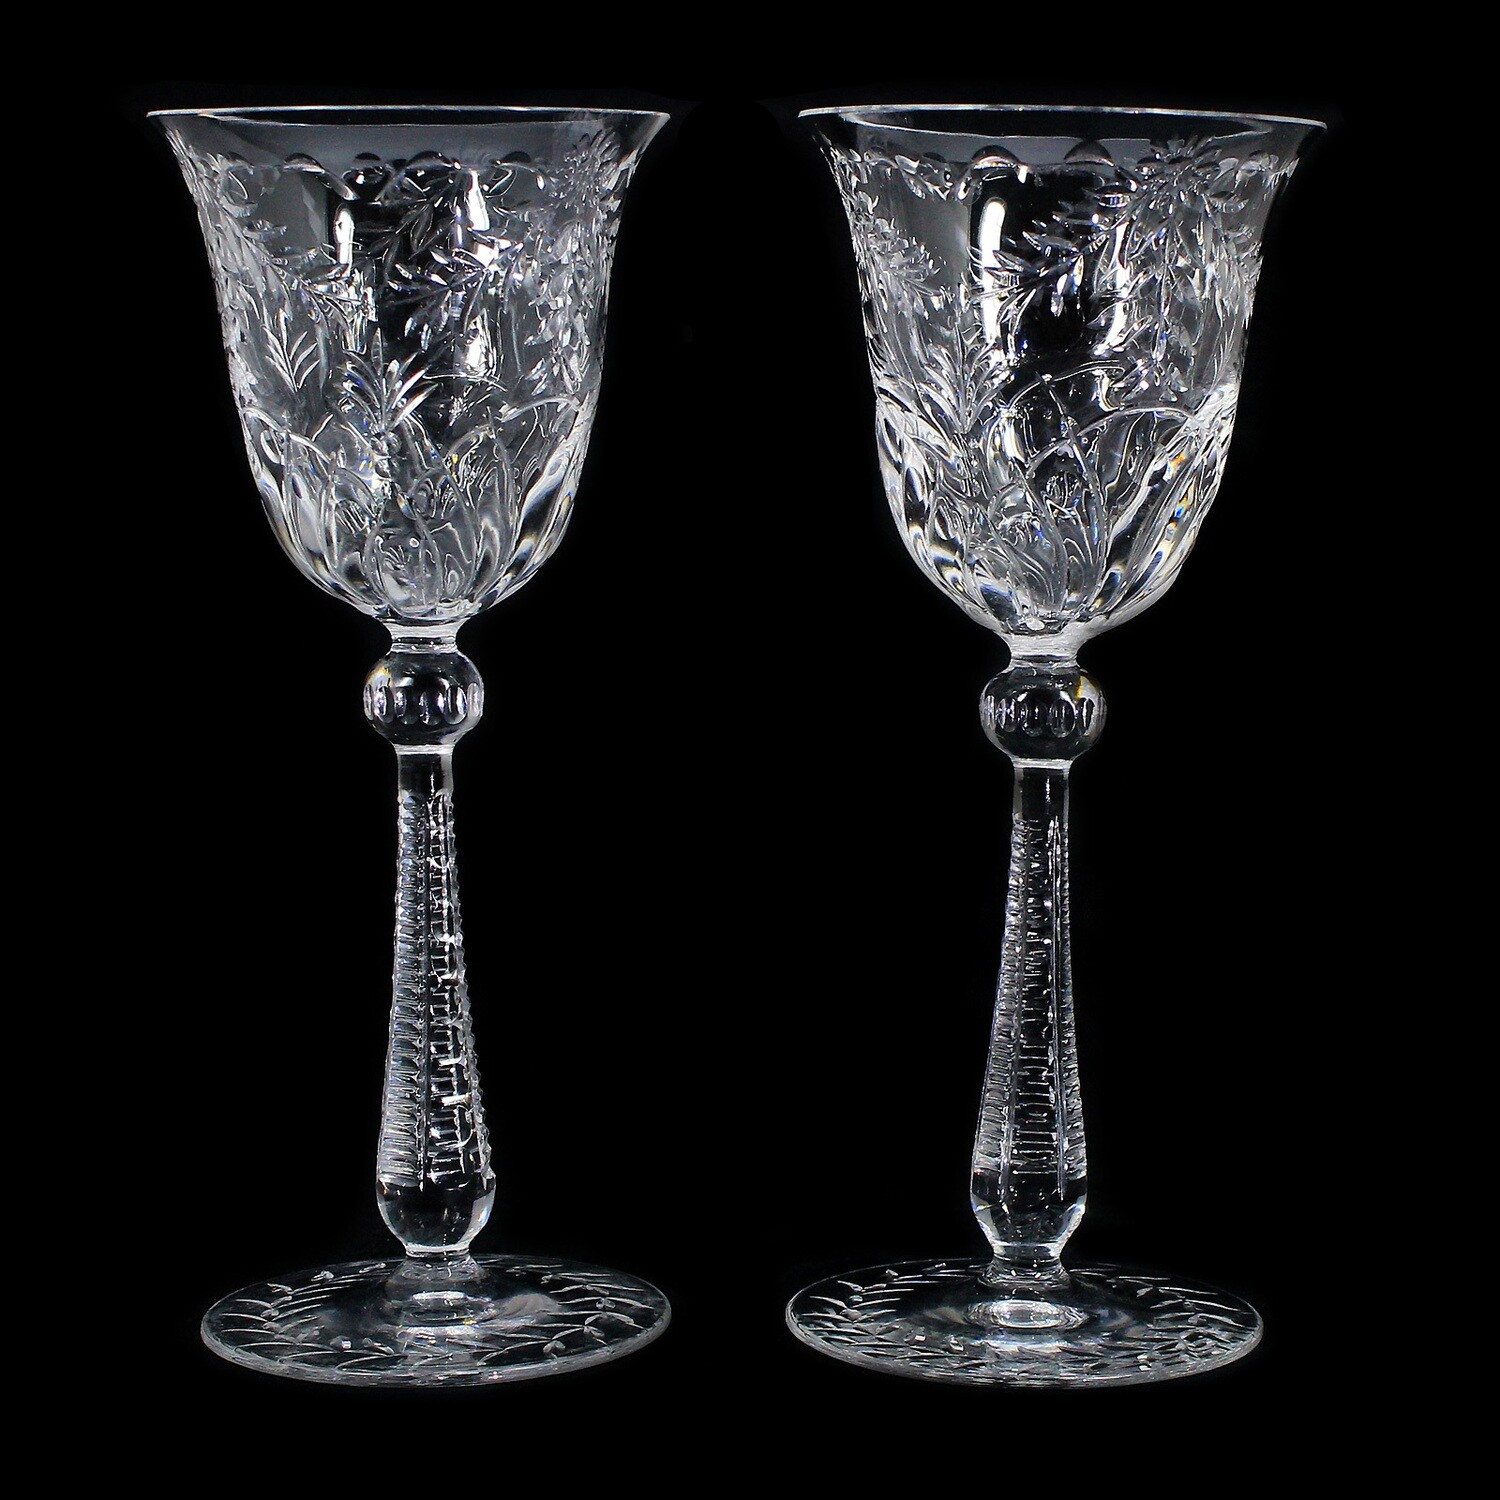 1st of 2. Wine glass with flower garlands, Josephinenhütte, Service Stefanie around 1900